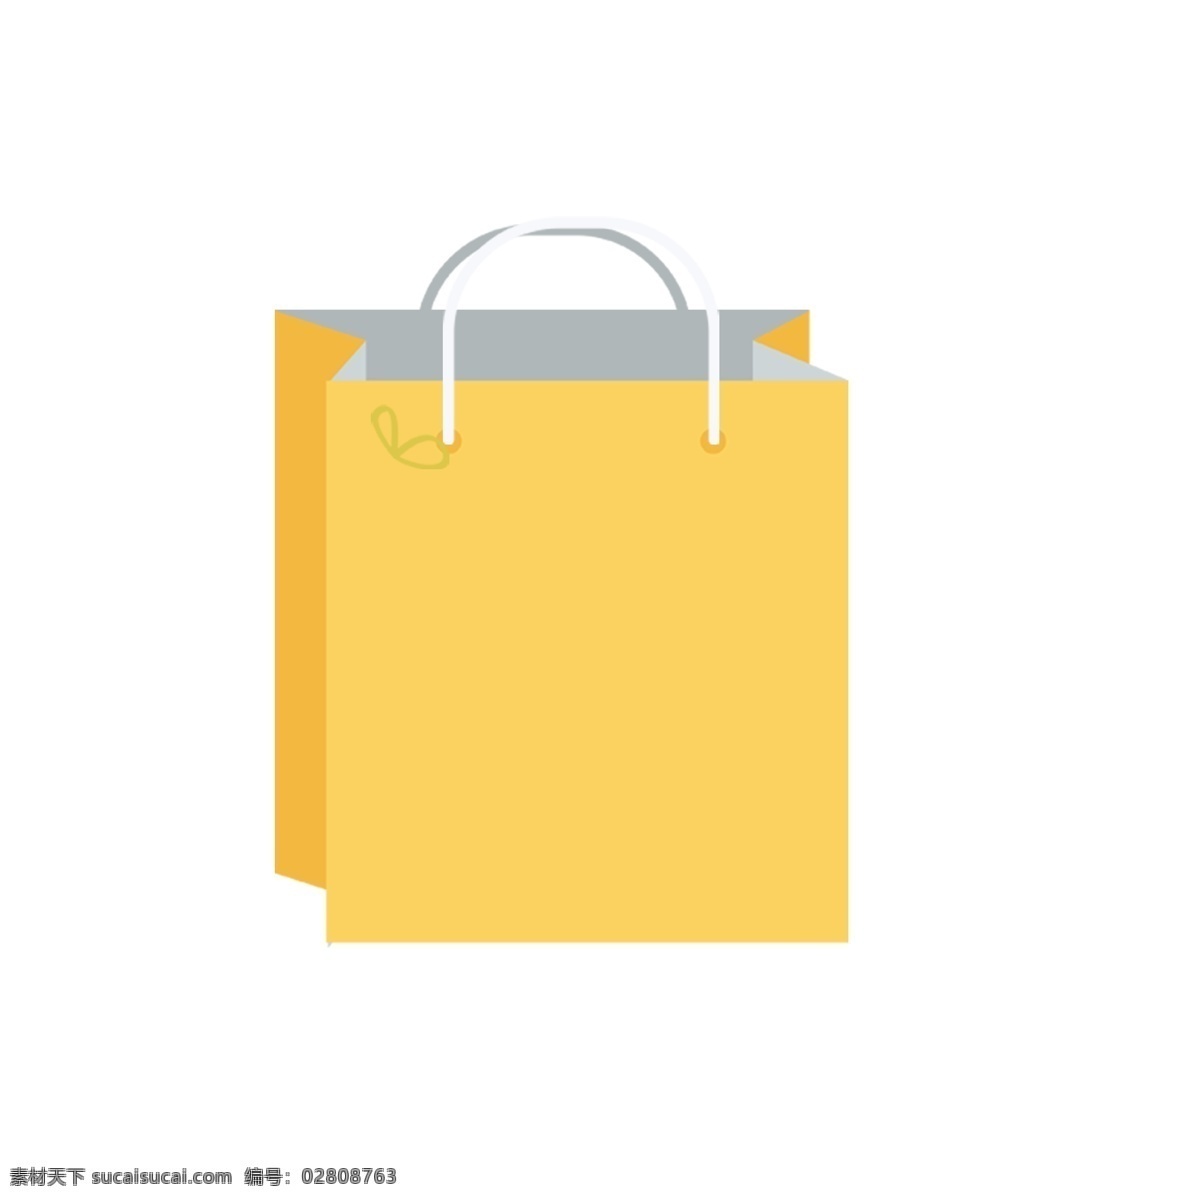 黄色 卡通 礼品 购物袋 商场 手绘 插图 活动 狂欢 电商 礼物 线上 节日 购物